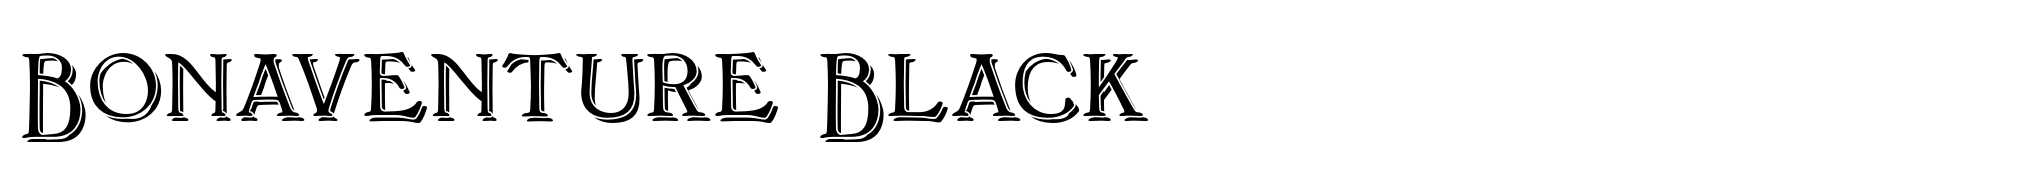 Bonaventure Black image